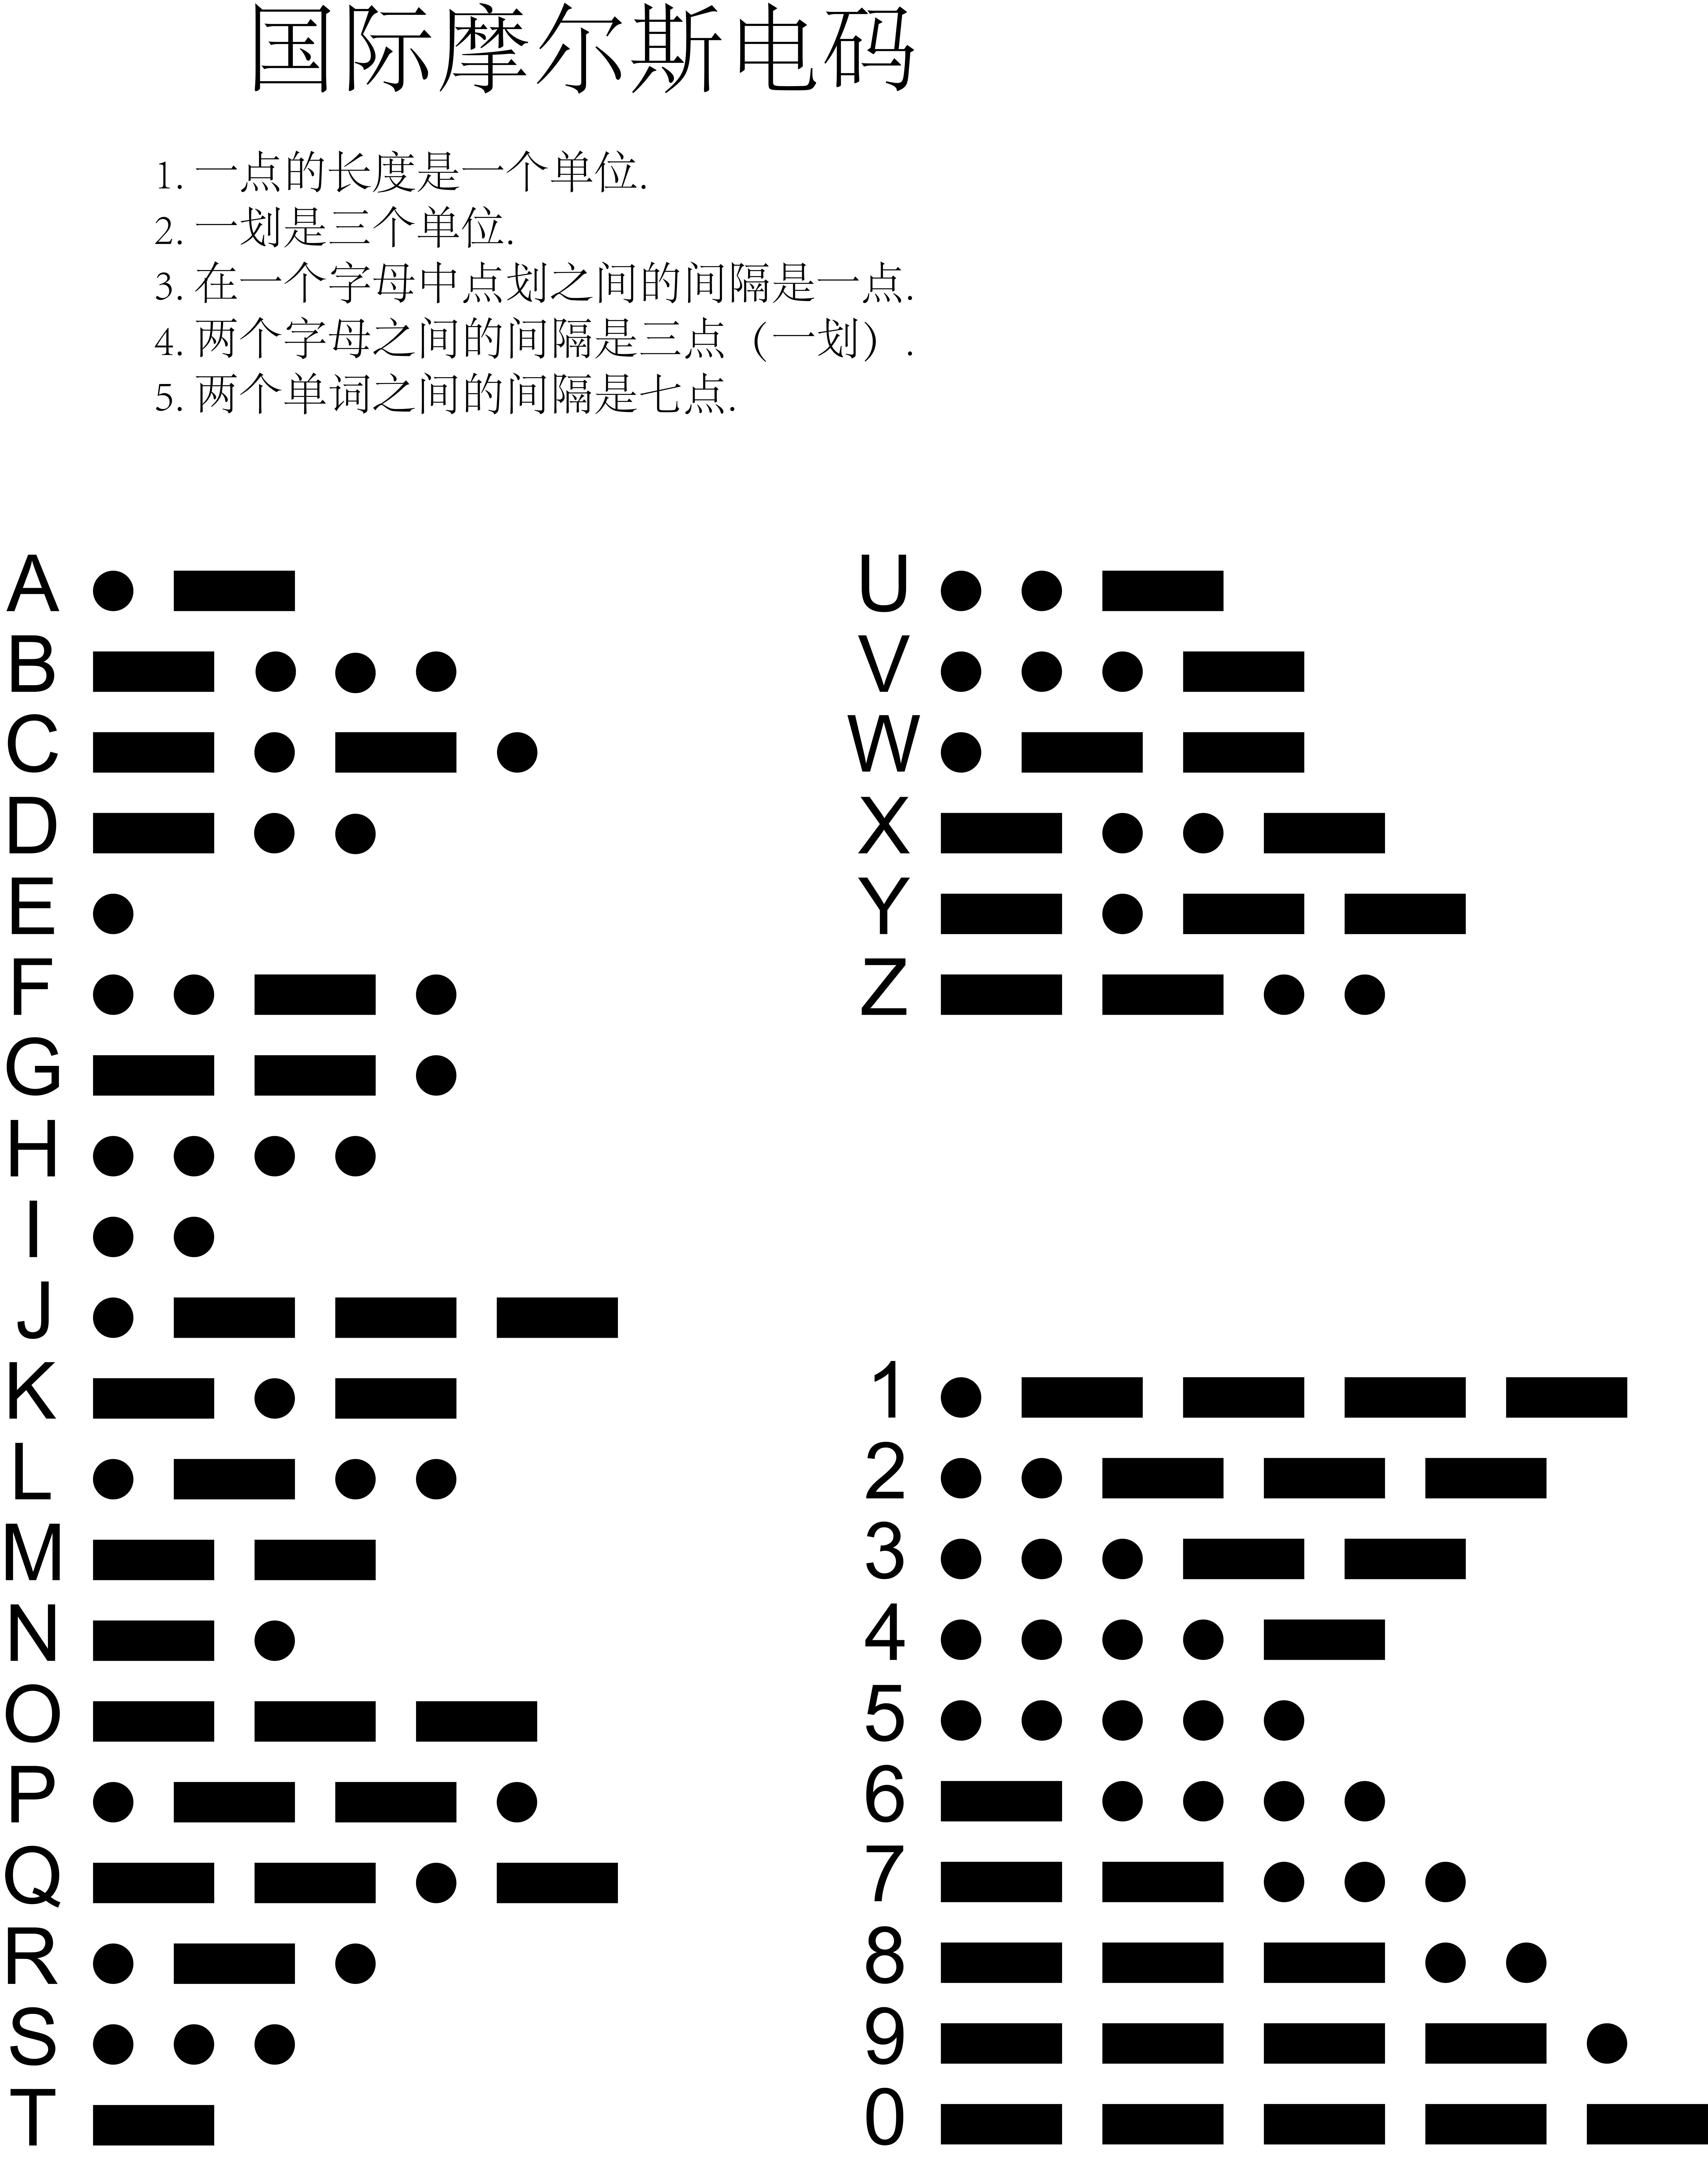 摩斯密码字母对照表图片